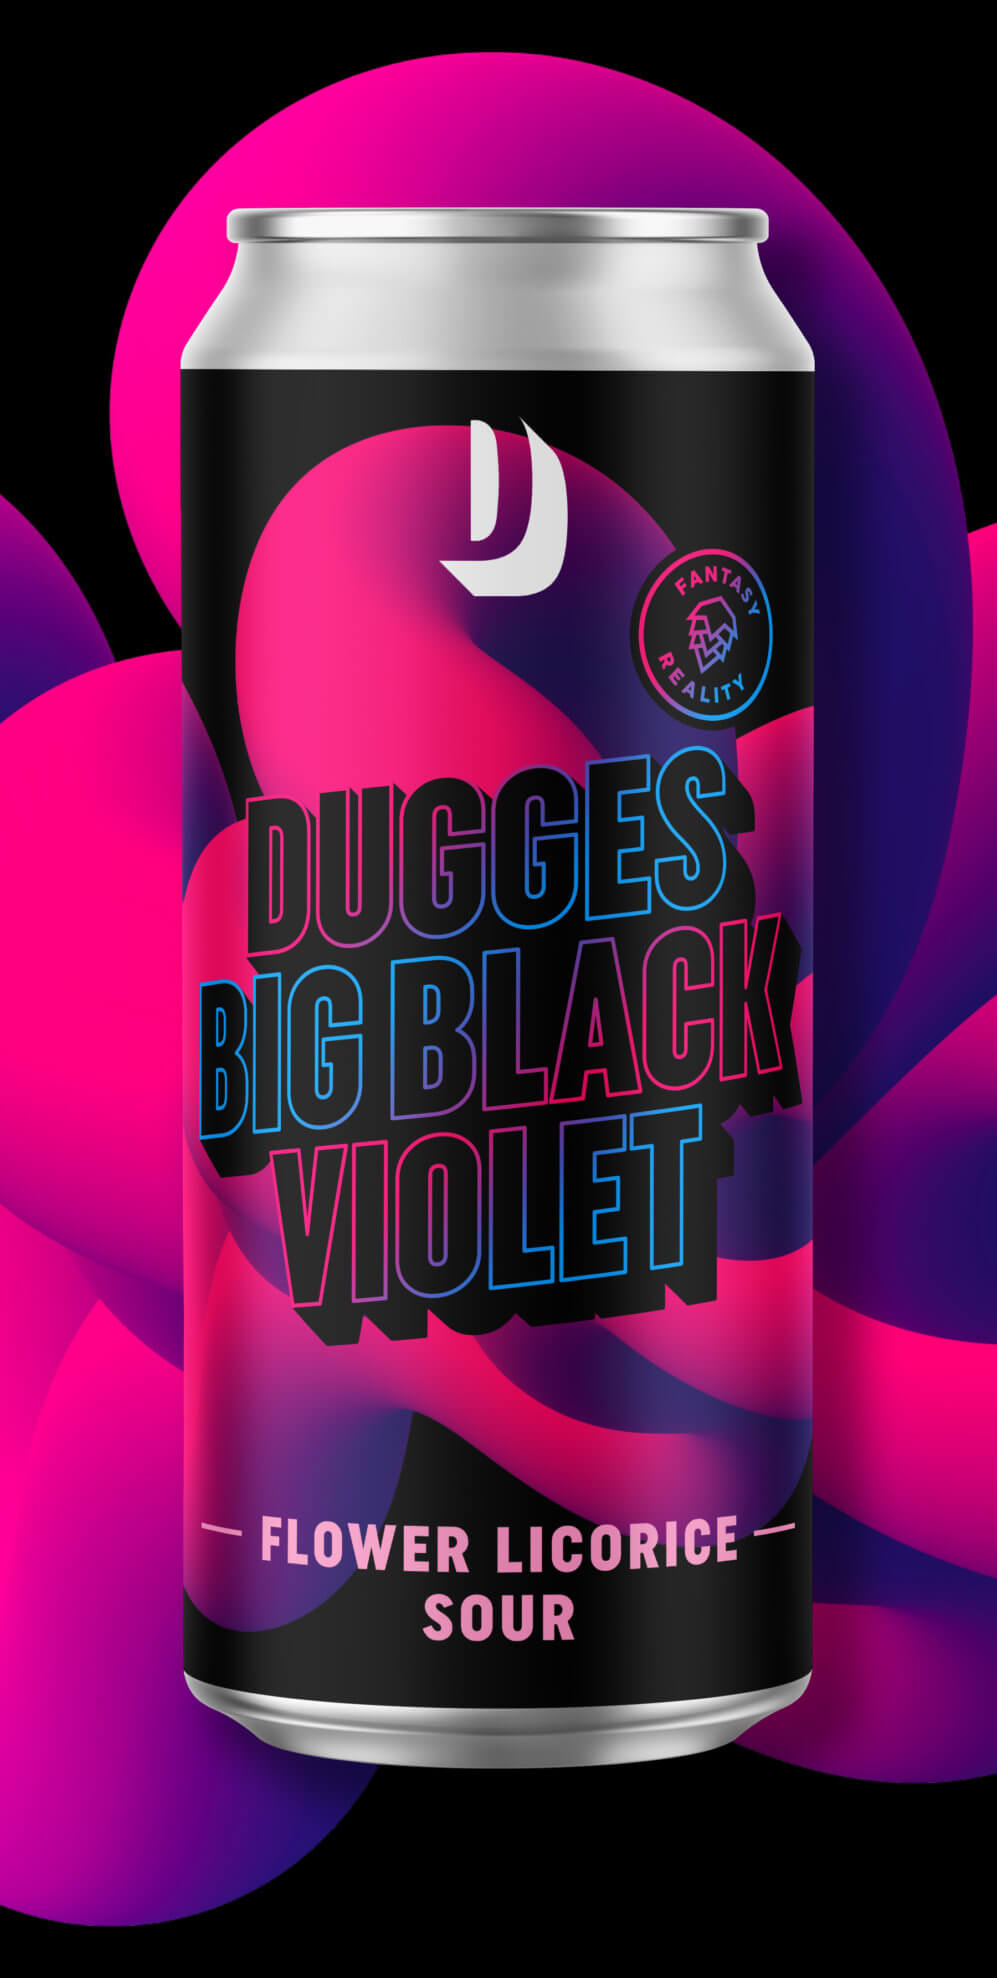 Big Black Violet